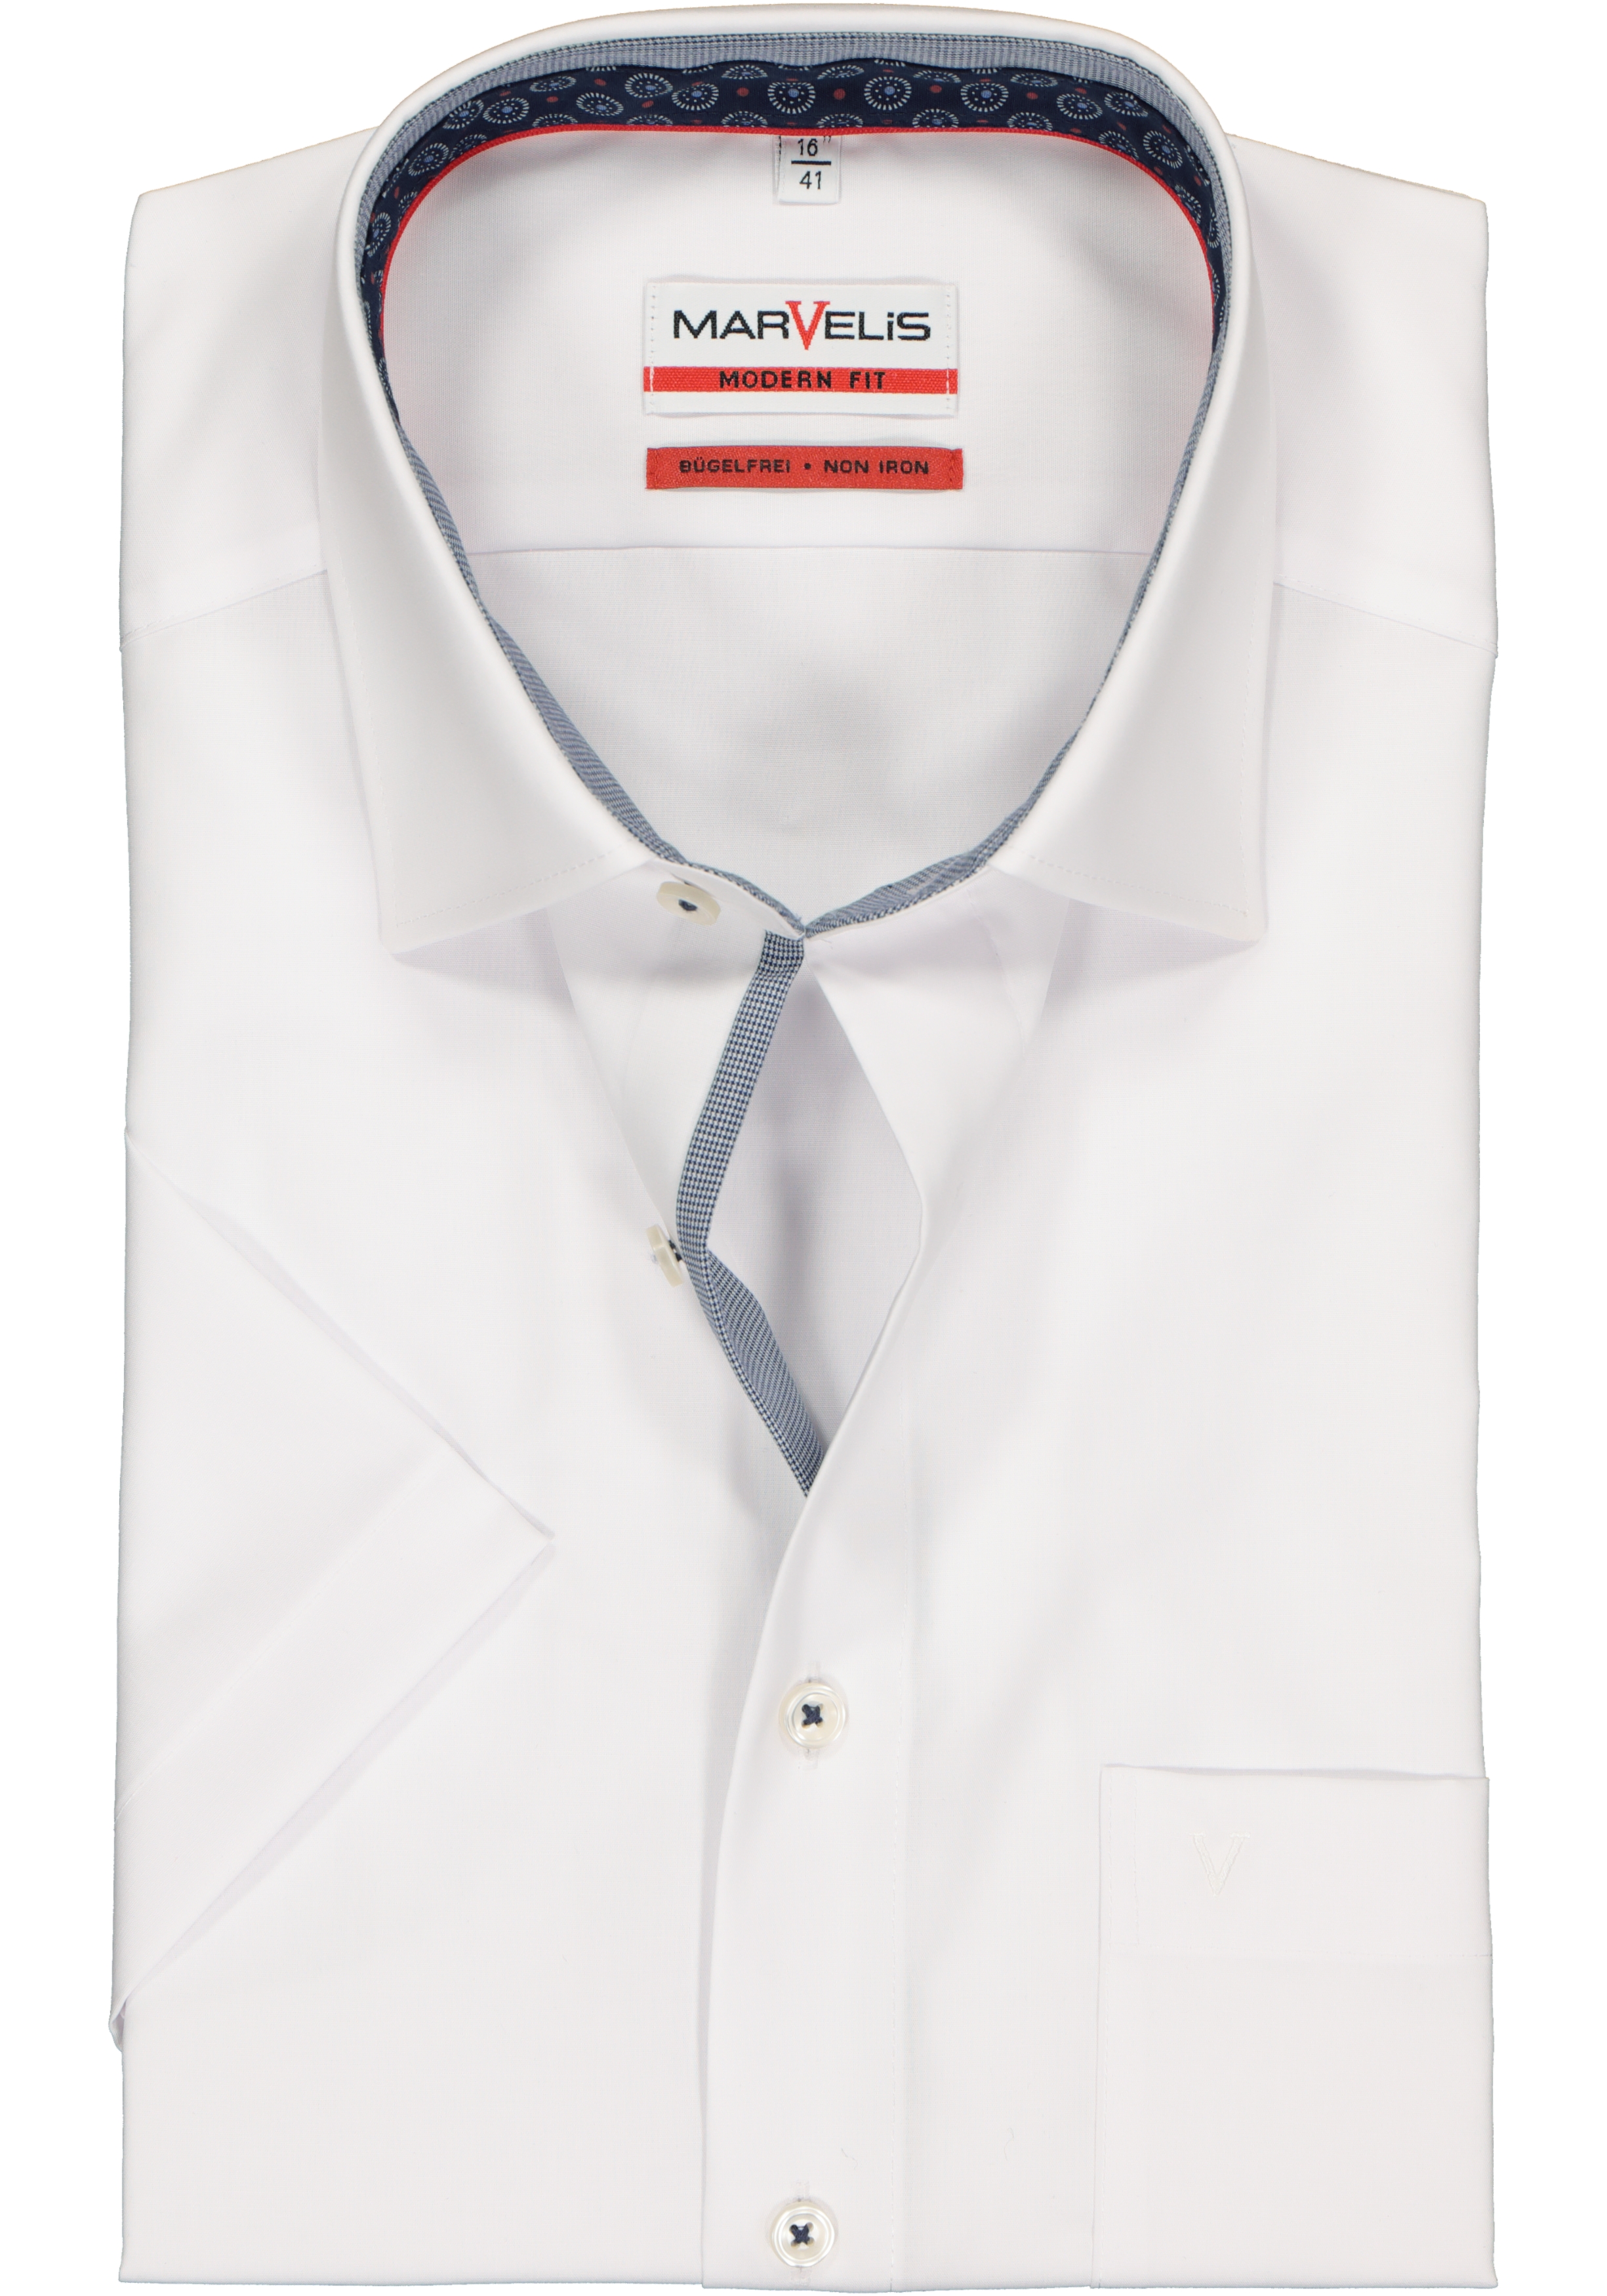 MARVELIS Modern Fit overhemd, korte mouw, wit (contrast)